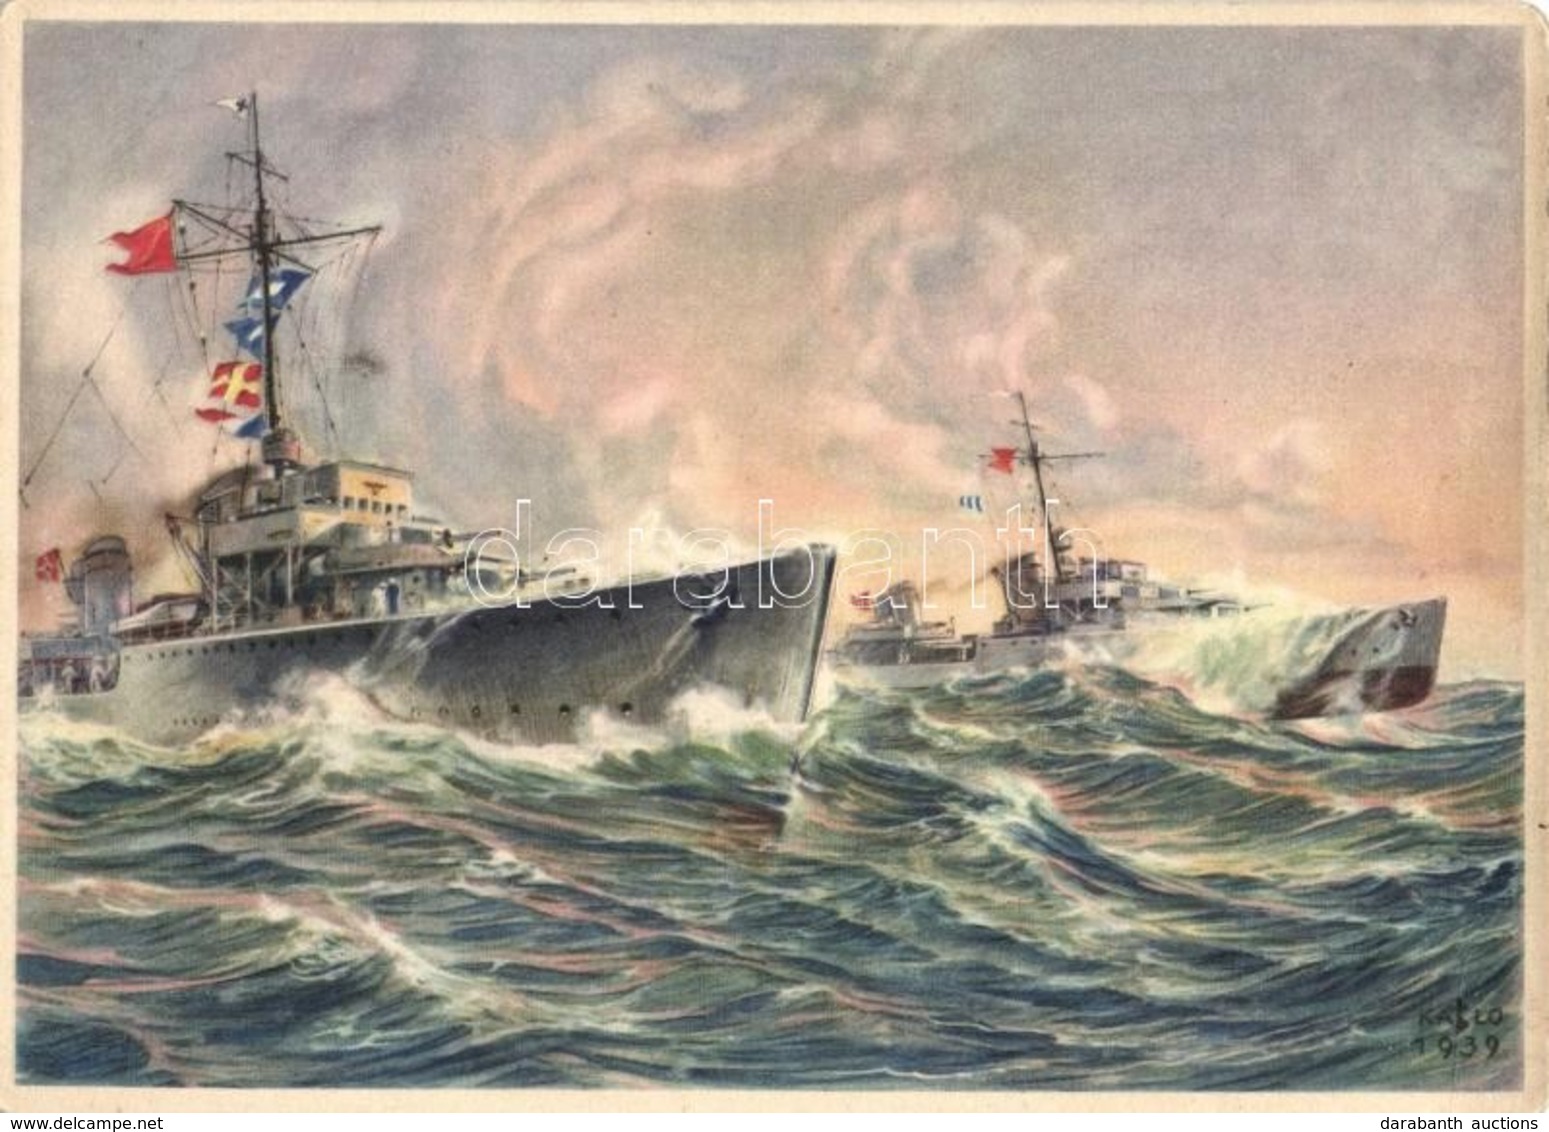 ** T2/T3 Wehrmachts-Postkarten Serie 4, Bild 2, Zerstörer / WWII German Navy Destroyer, Art Postcard, S: Kablo (EK) - Zonder Classificatie